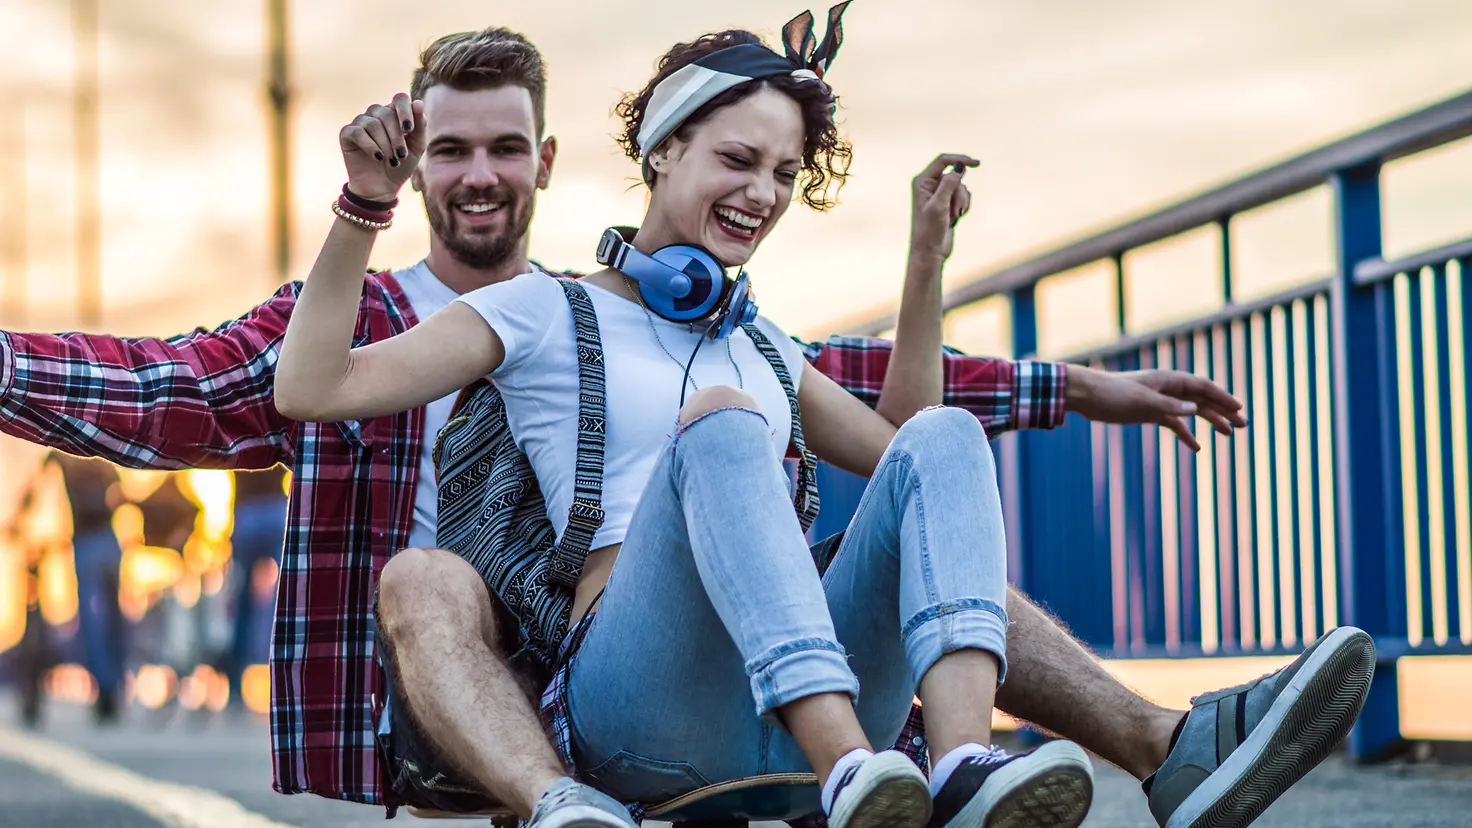 Ein junger Mann und eine extrovertierte, junge Frau sitzen lachend auf einem rollenden Skateboard.